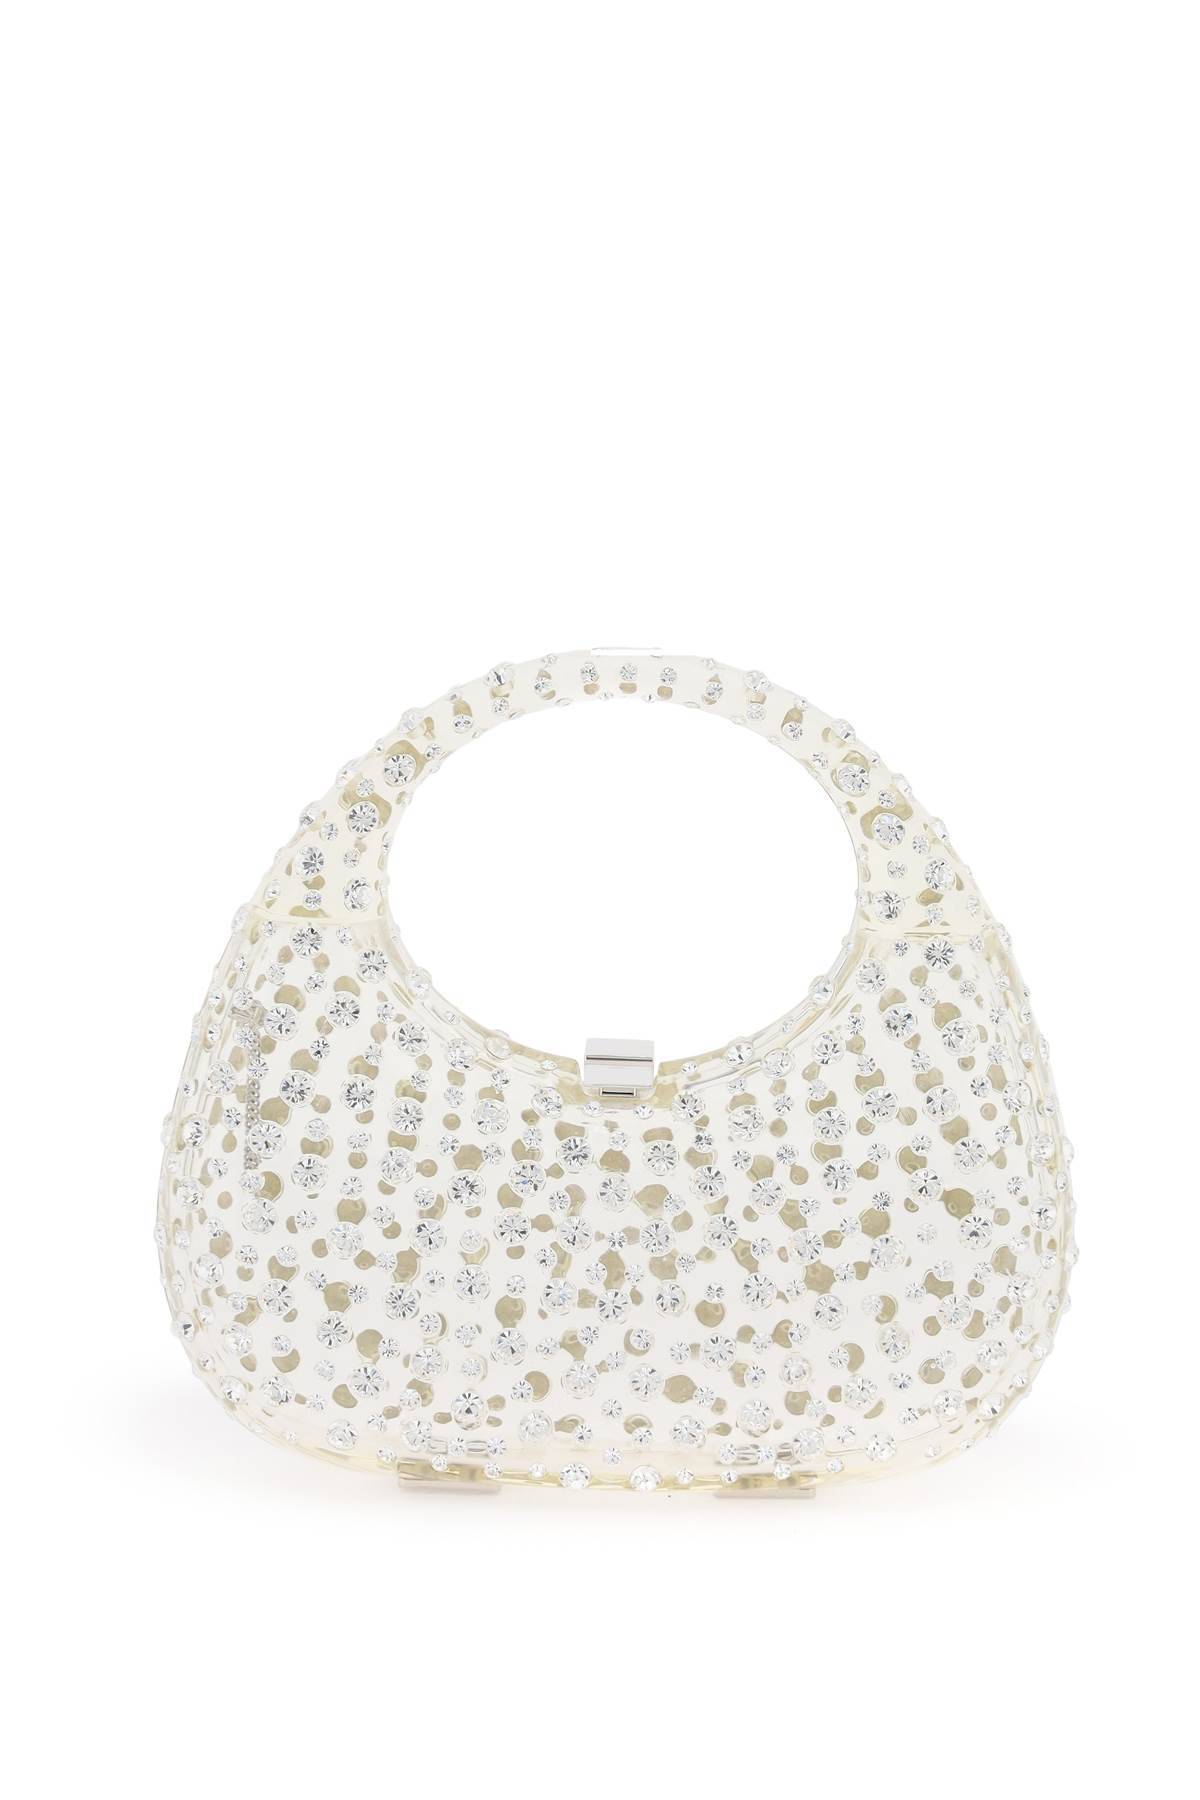 L'Alingi L'ALINGI meleni handbag with crystals